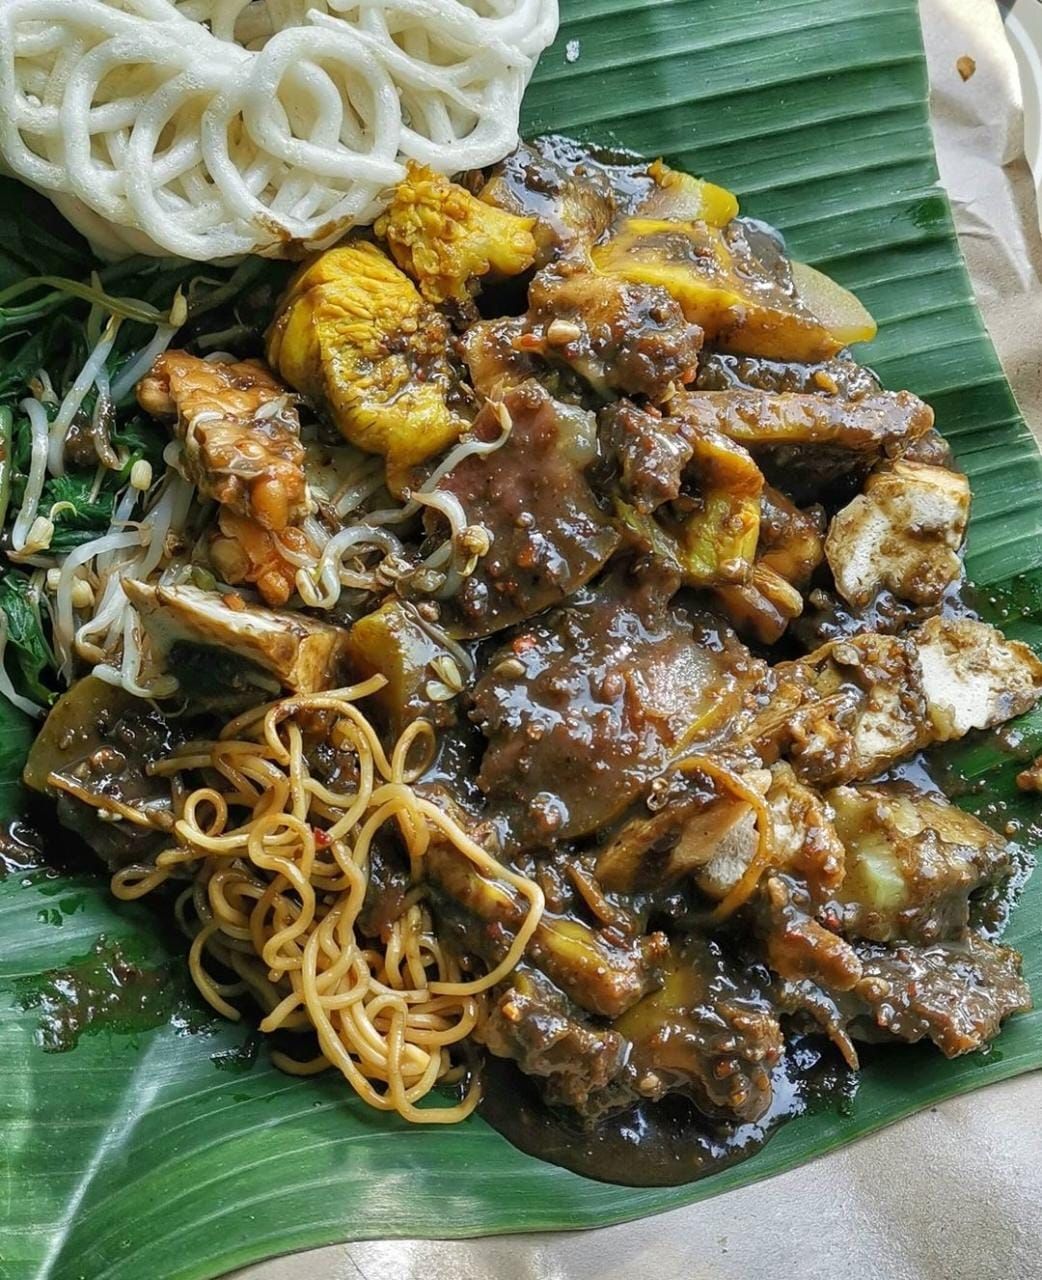 10 Kuliner Khas Surabaya yang Menarik dan Bikin Ngiler, Rujak Cingur Salah Satunya